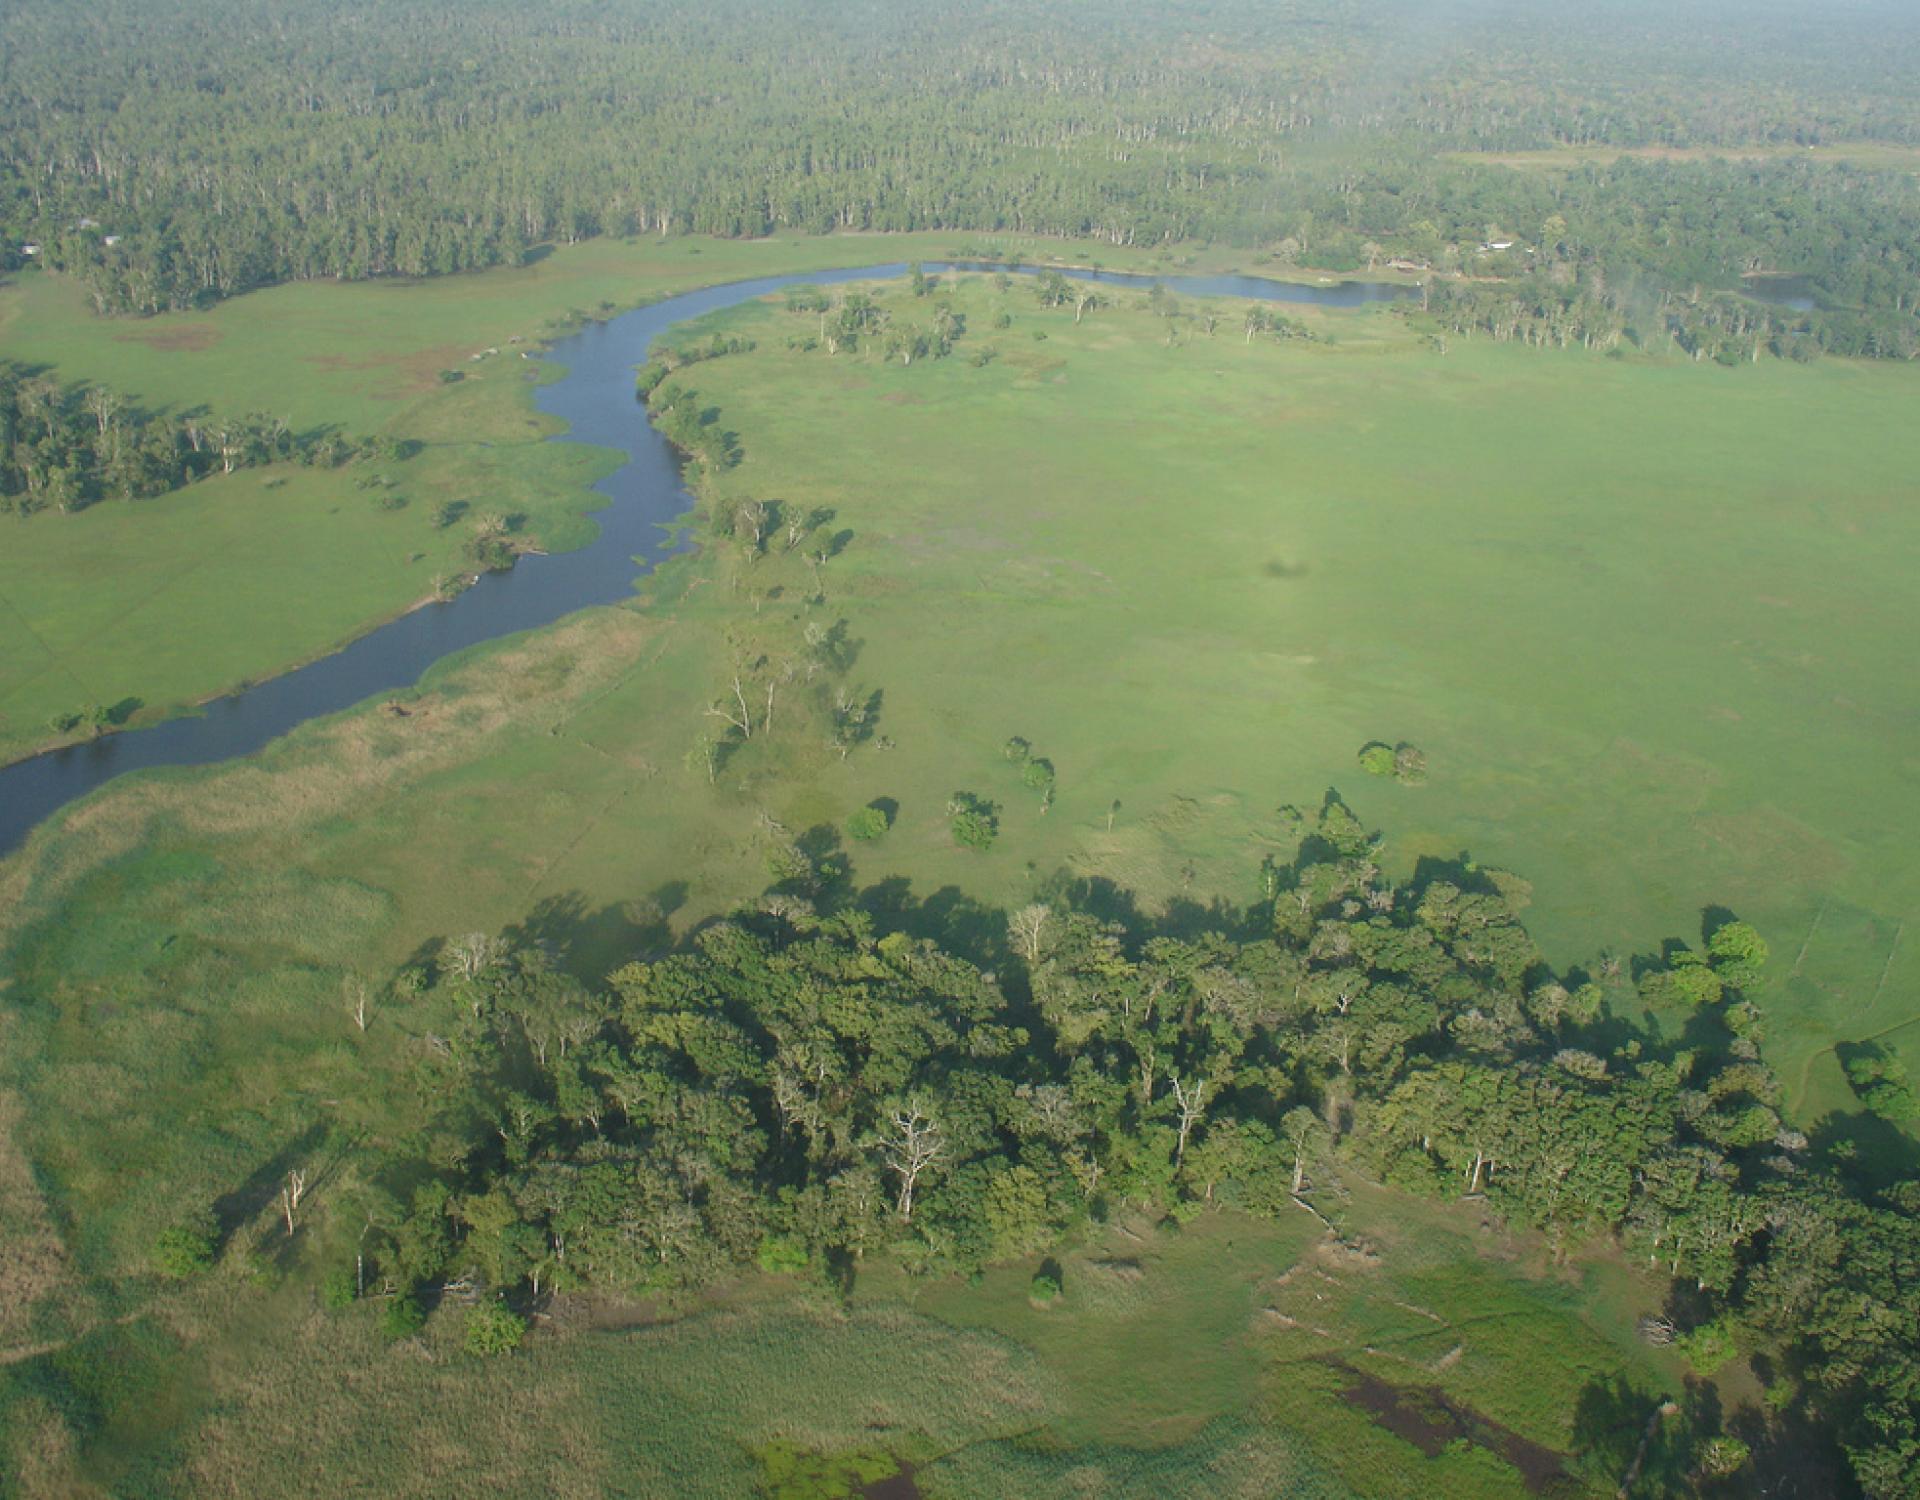 Tonda Wildlife Management Area (Papua New Guinea)